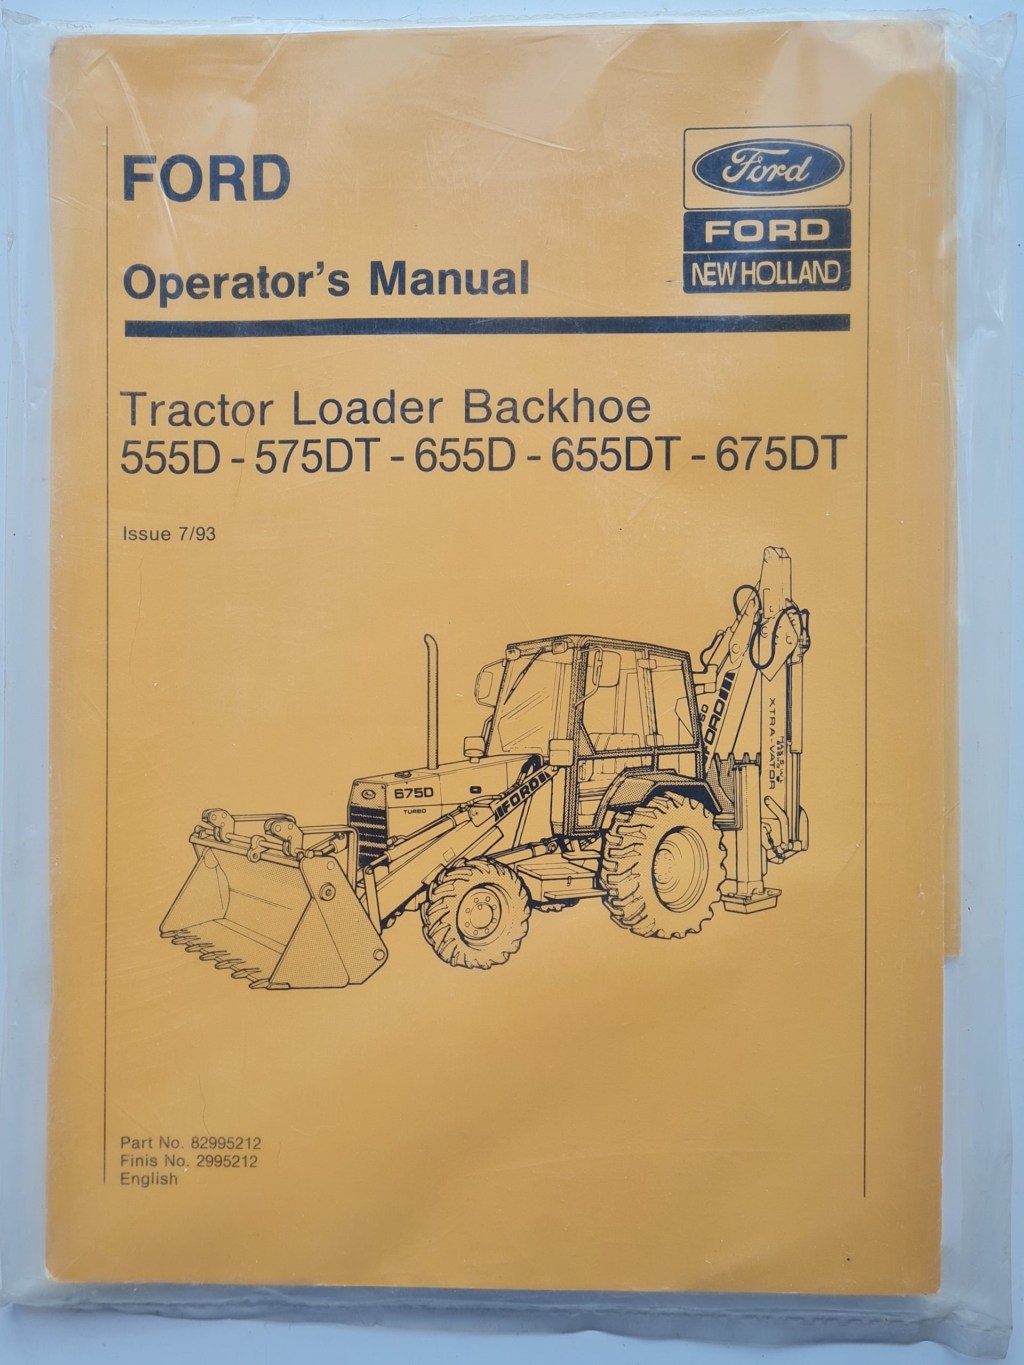 Picture of: Ford D DT D DT DT Tractor Loader Backhoe Operators